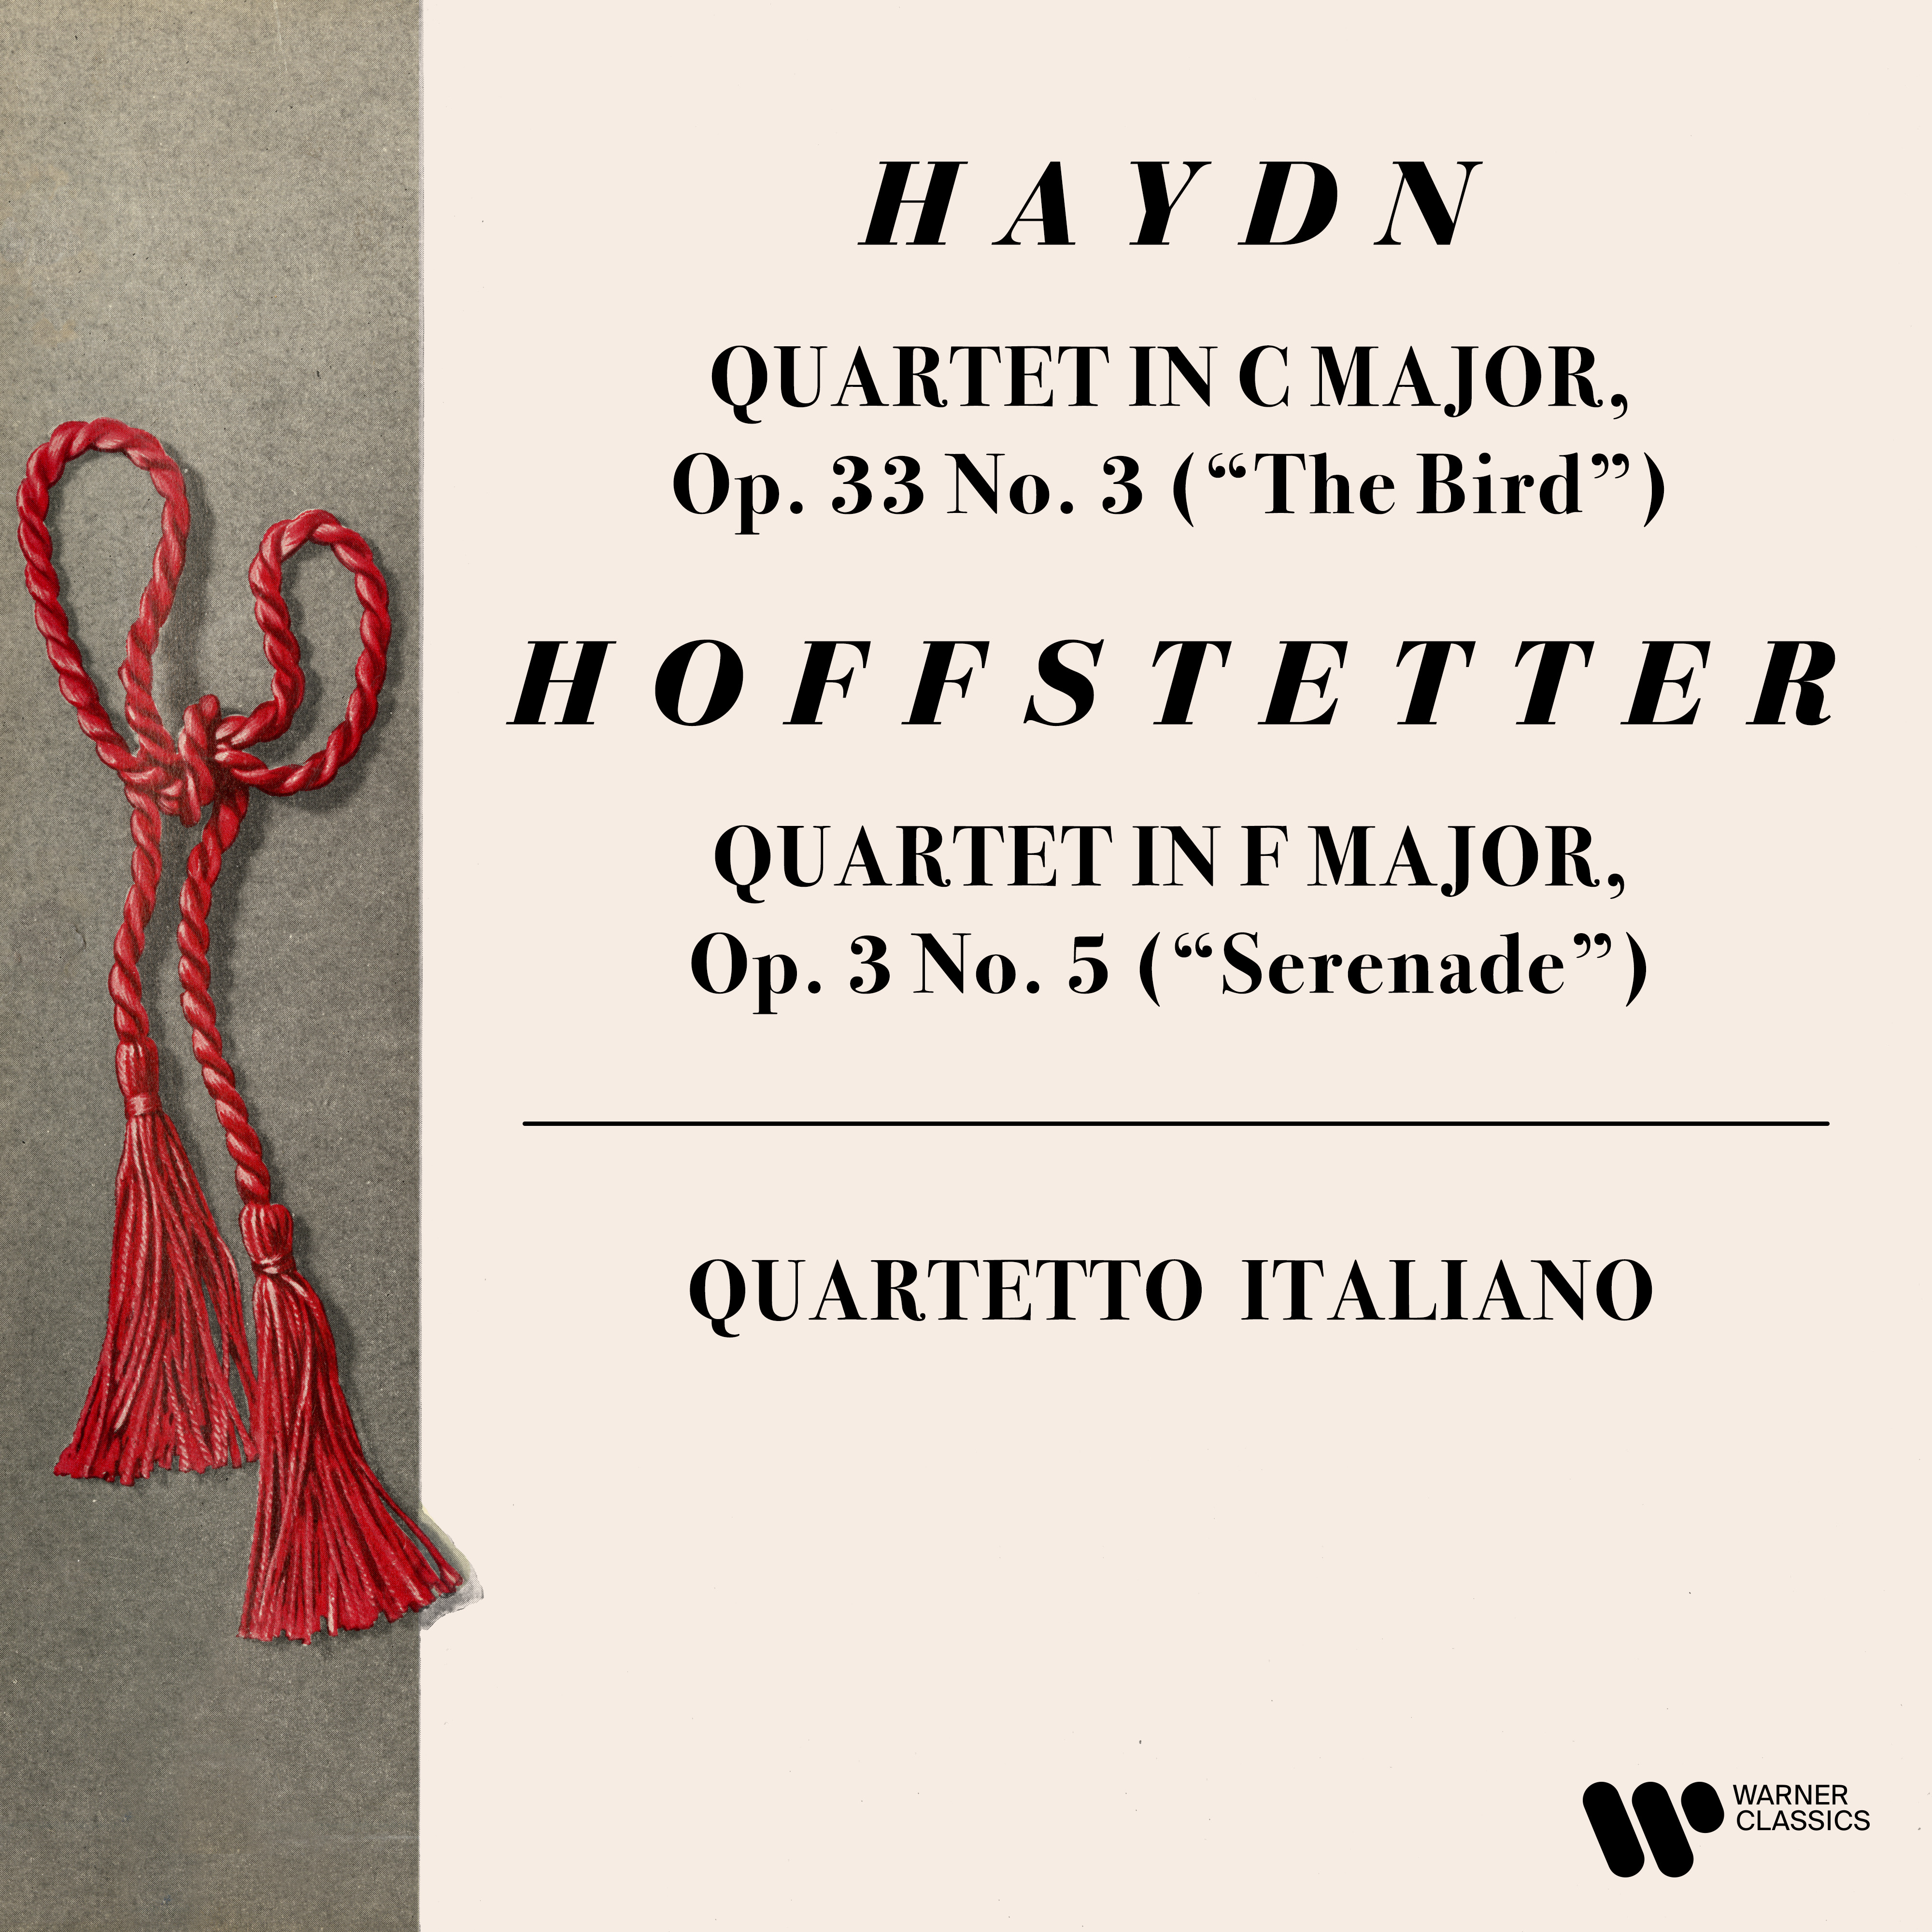 Haydn: String Quartet, Op. 33 No. 3 “The Bird” - Hoffstetter: String Quartet  “Serenade” | Warner Classics